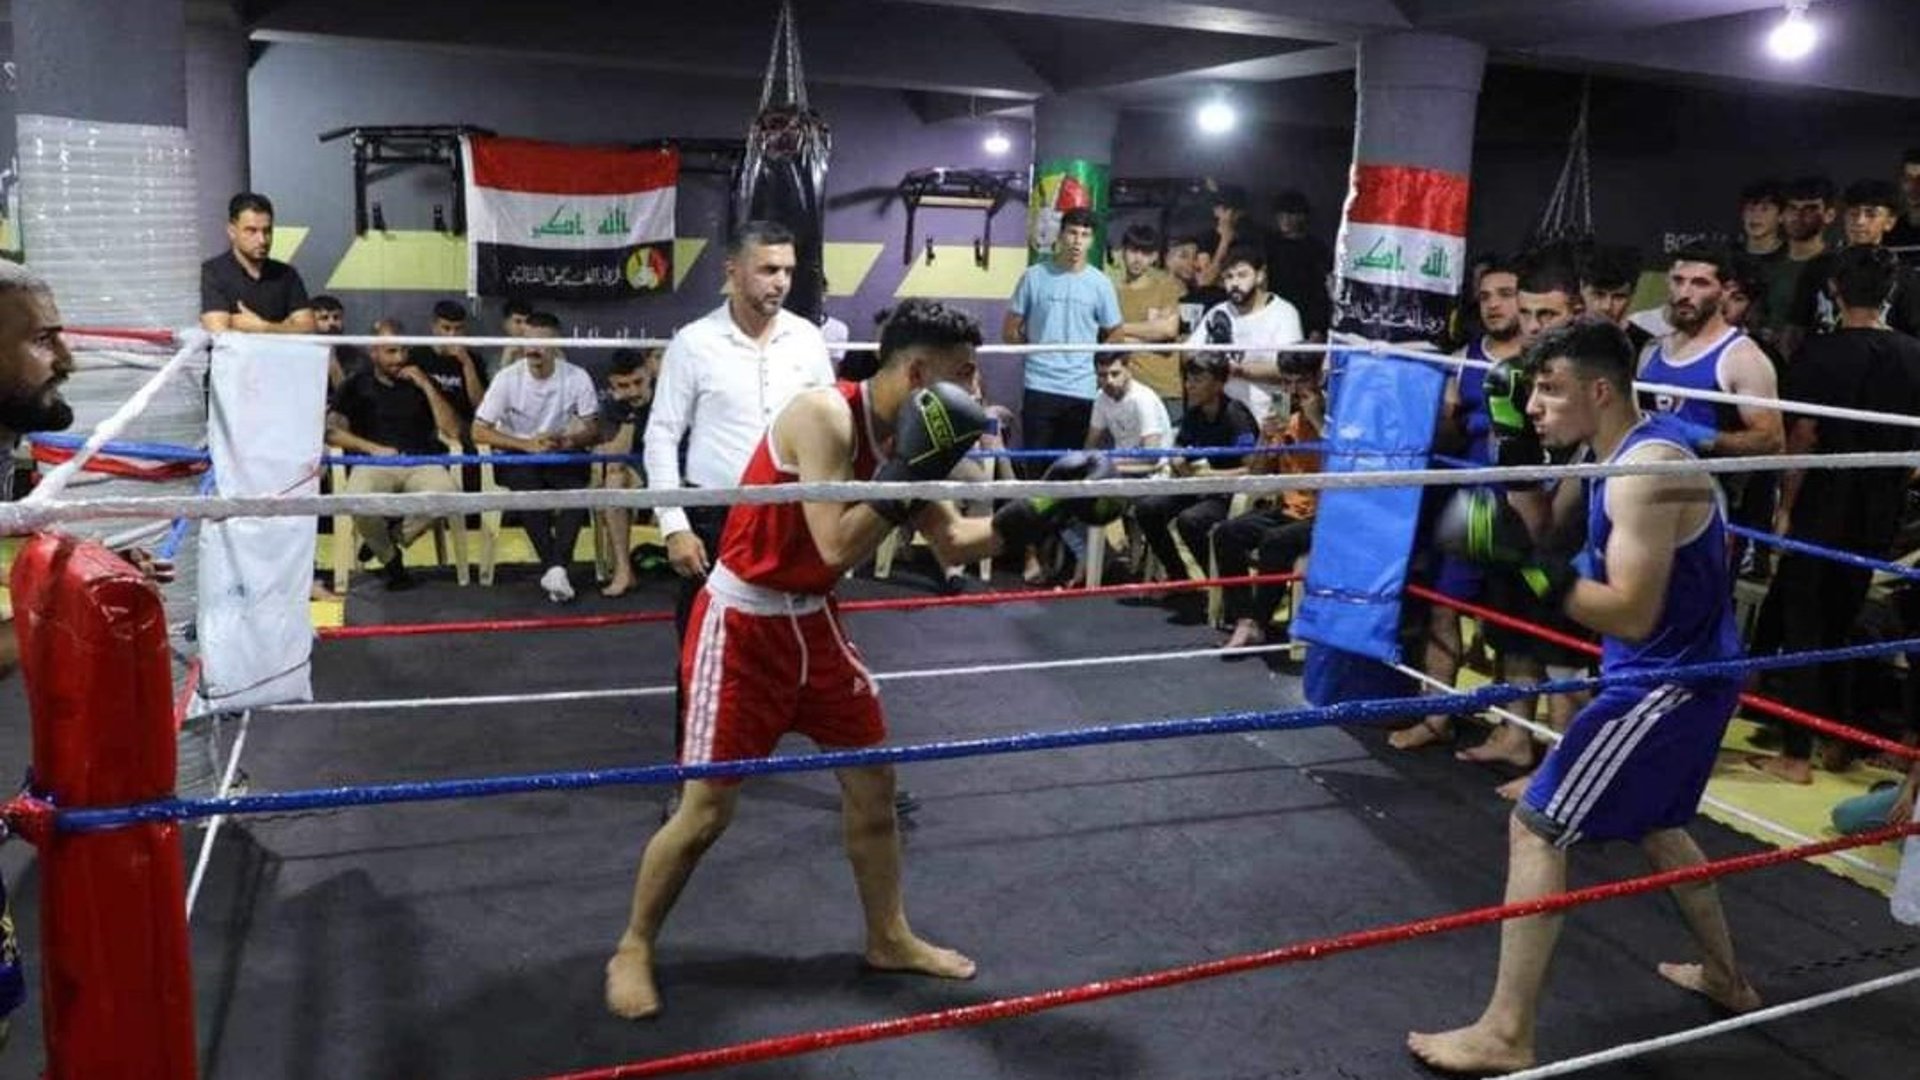 صور ونتائج أولى نزالات الملاكمة في تلعفر: فاز رضا عسكر والجمهور جلوساً ووقوفاً